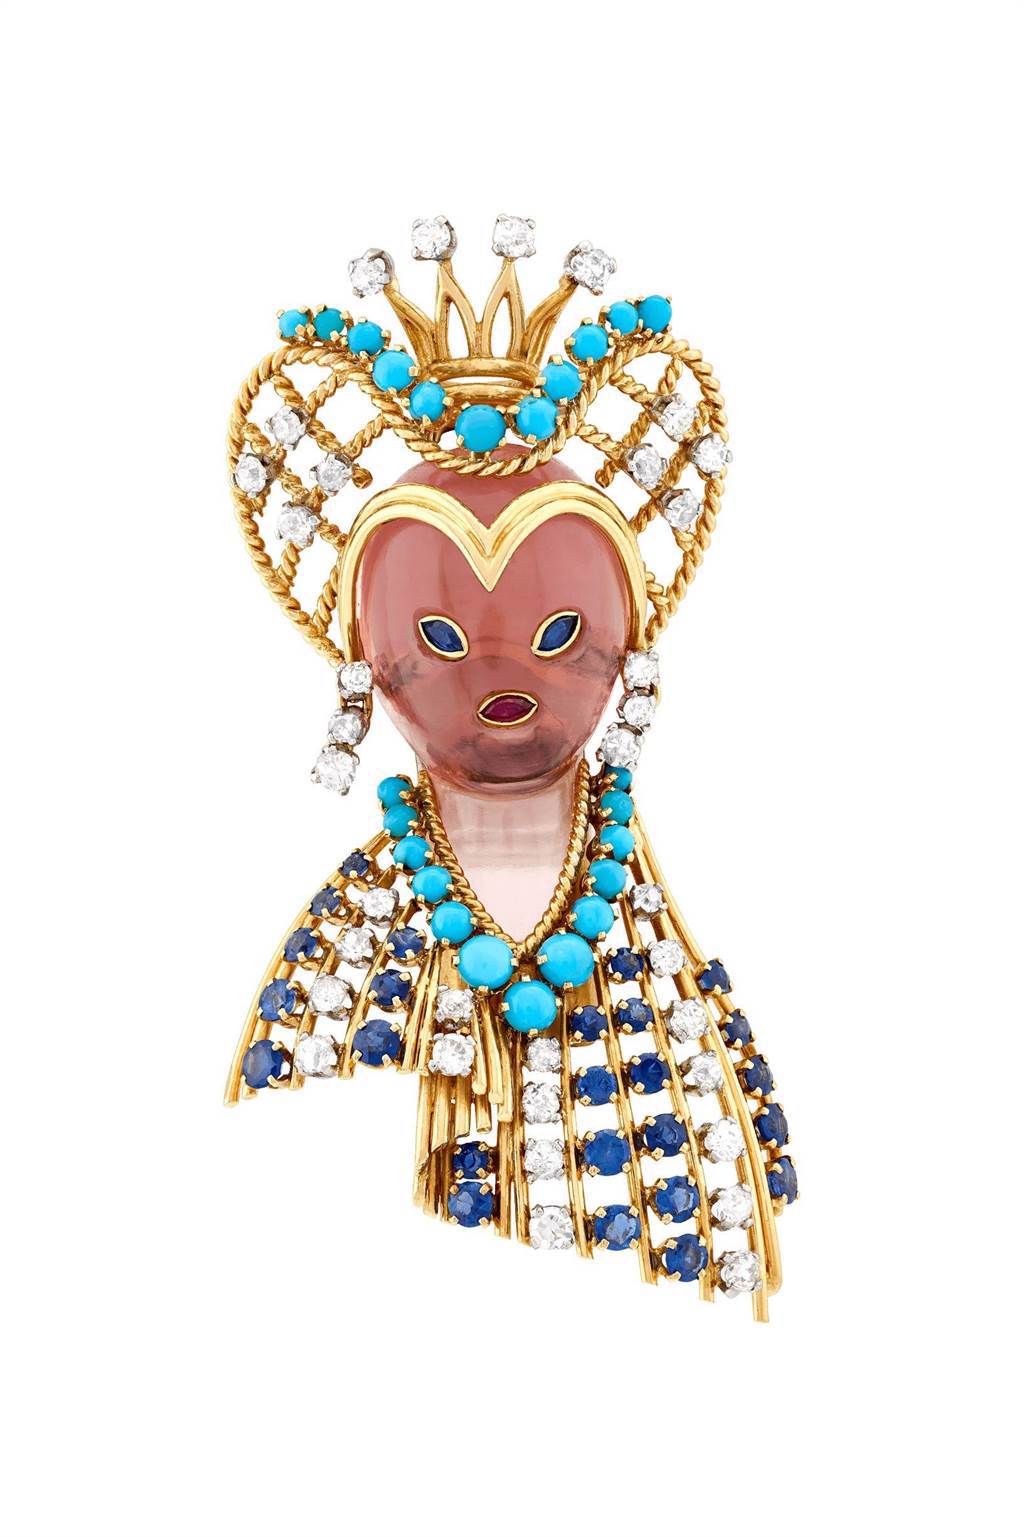 梵克雅寶Heritage典藏系列Queen’s head胸針，1959年，藍寶石、紅寶石、粉紅石英、綠松石、鑽石，151萬元。（Van Cleef & Arpels提供）